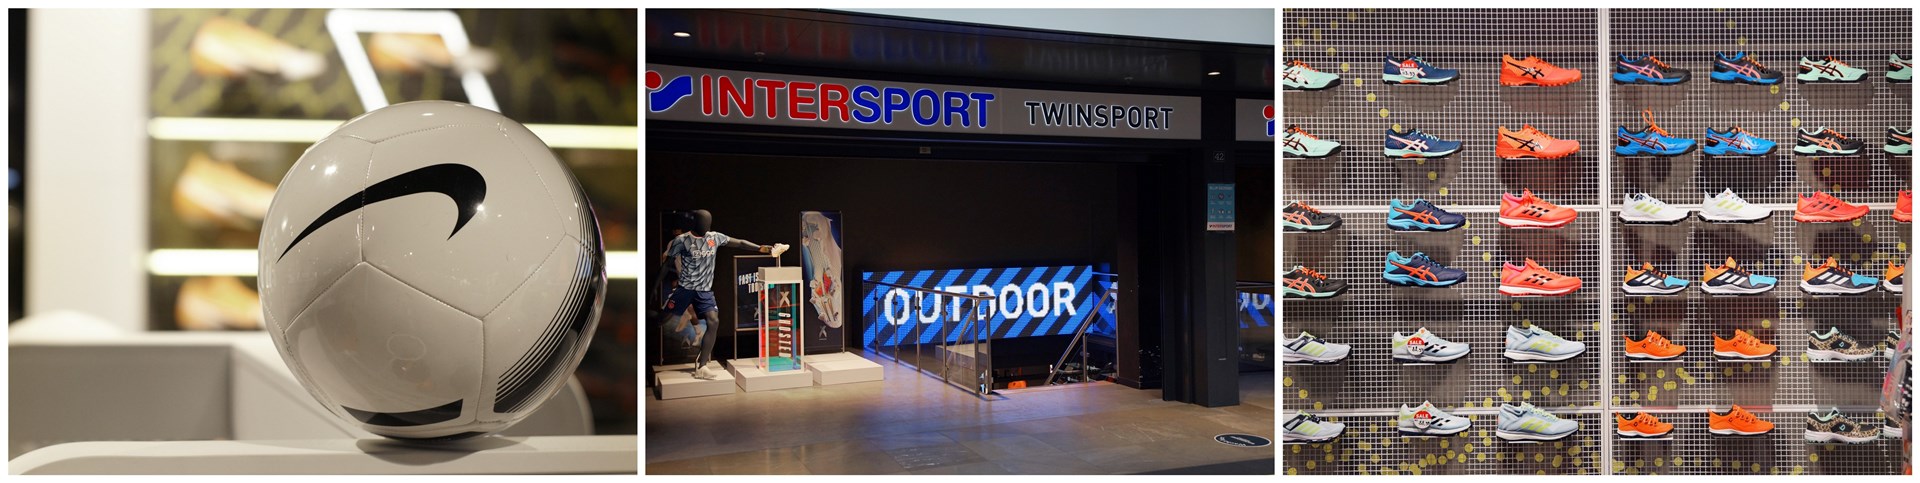 gelderlandplein intersport twinsport